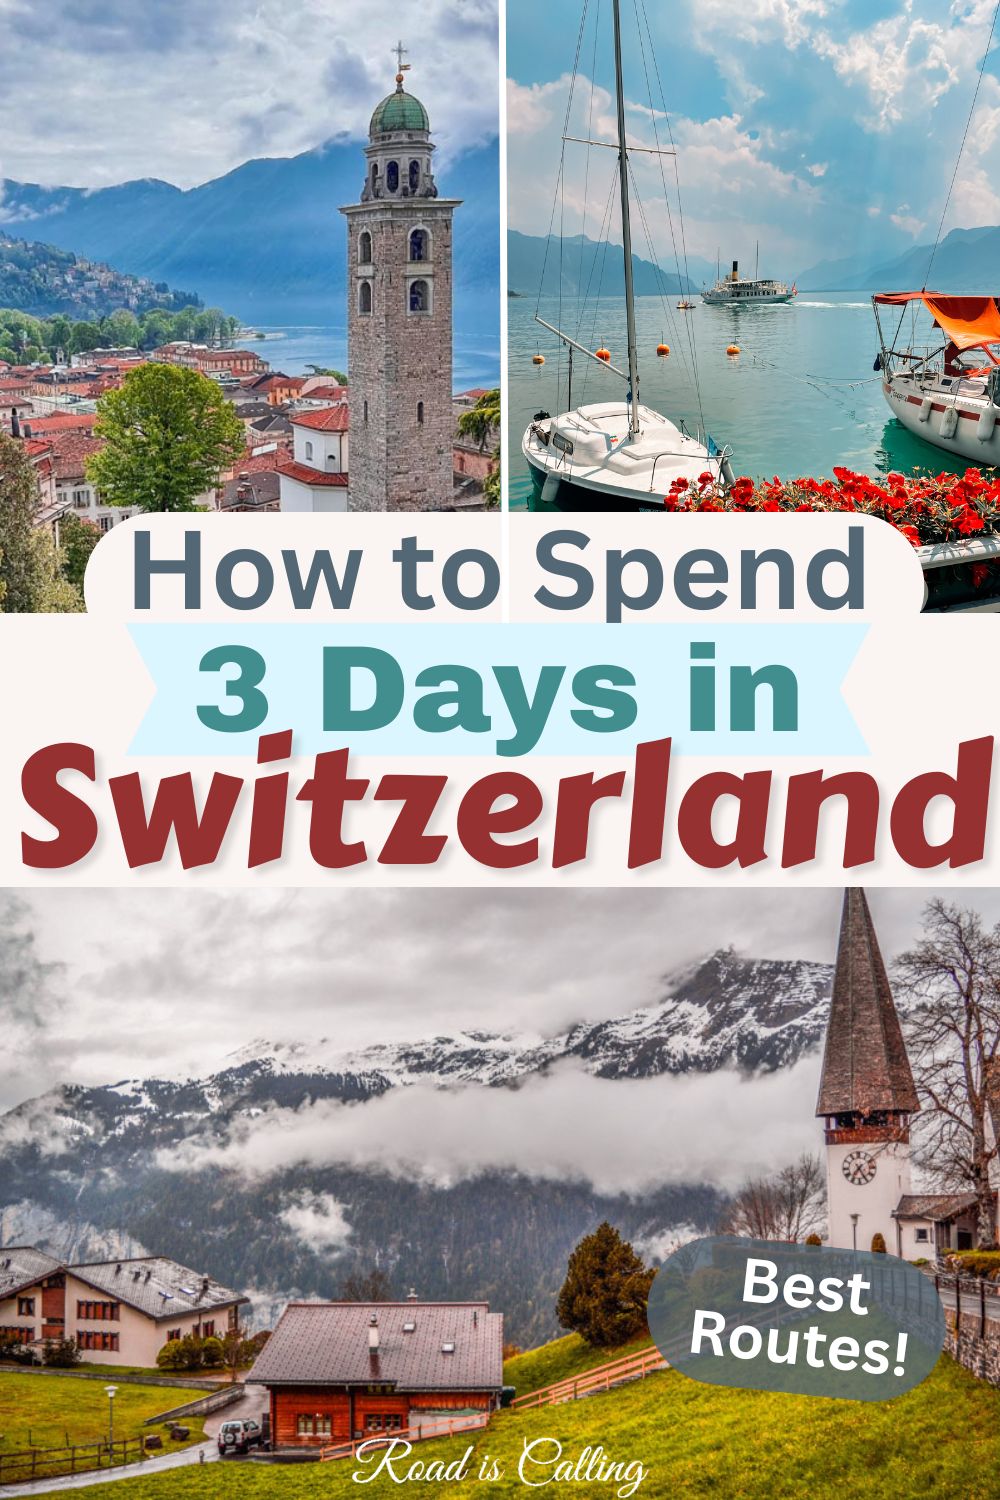 3 days in Switzerland itinerary